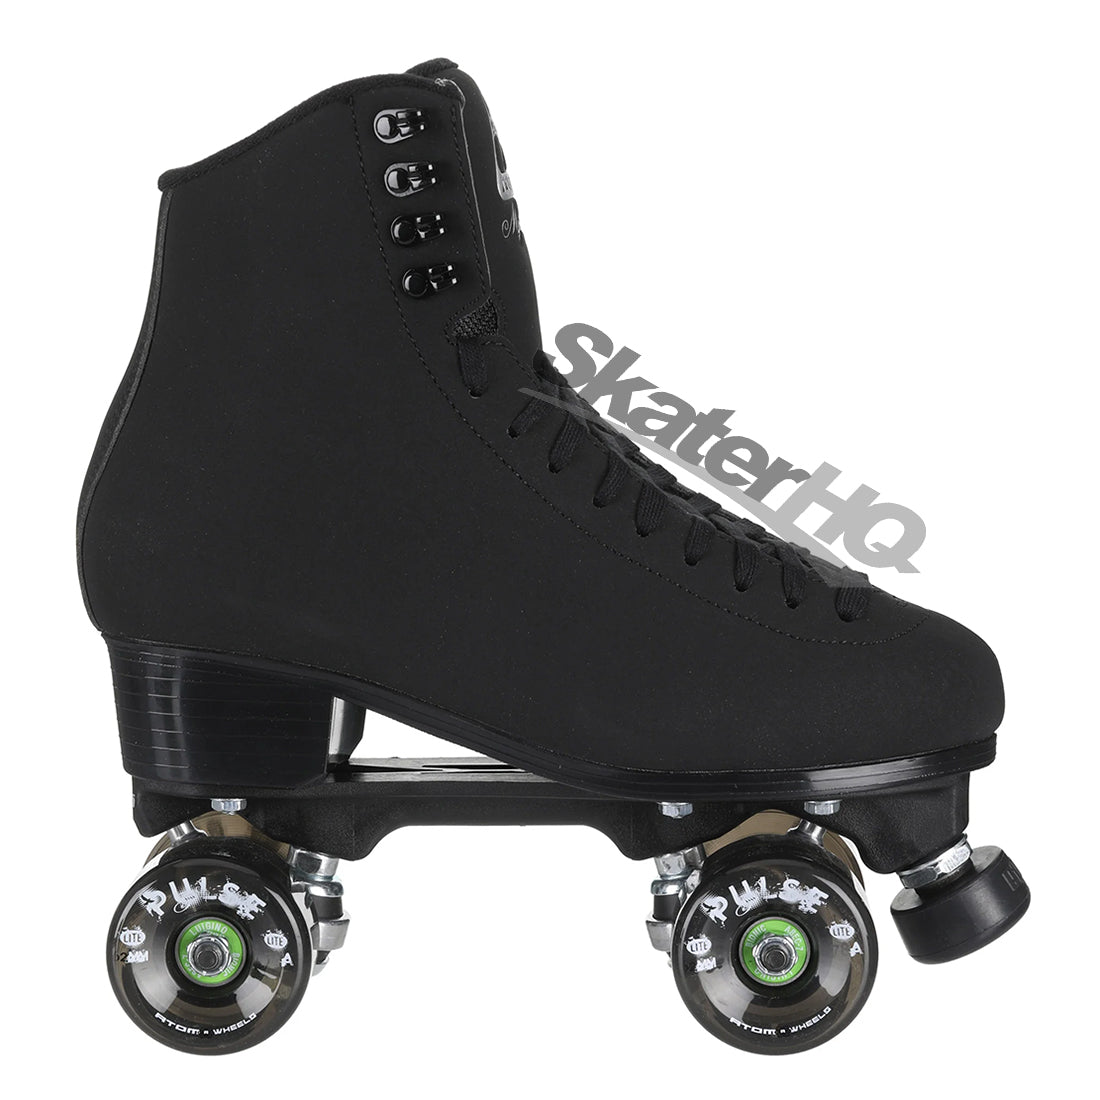 Jackson Mystique Black 10US 28.4cm Roller Skates